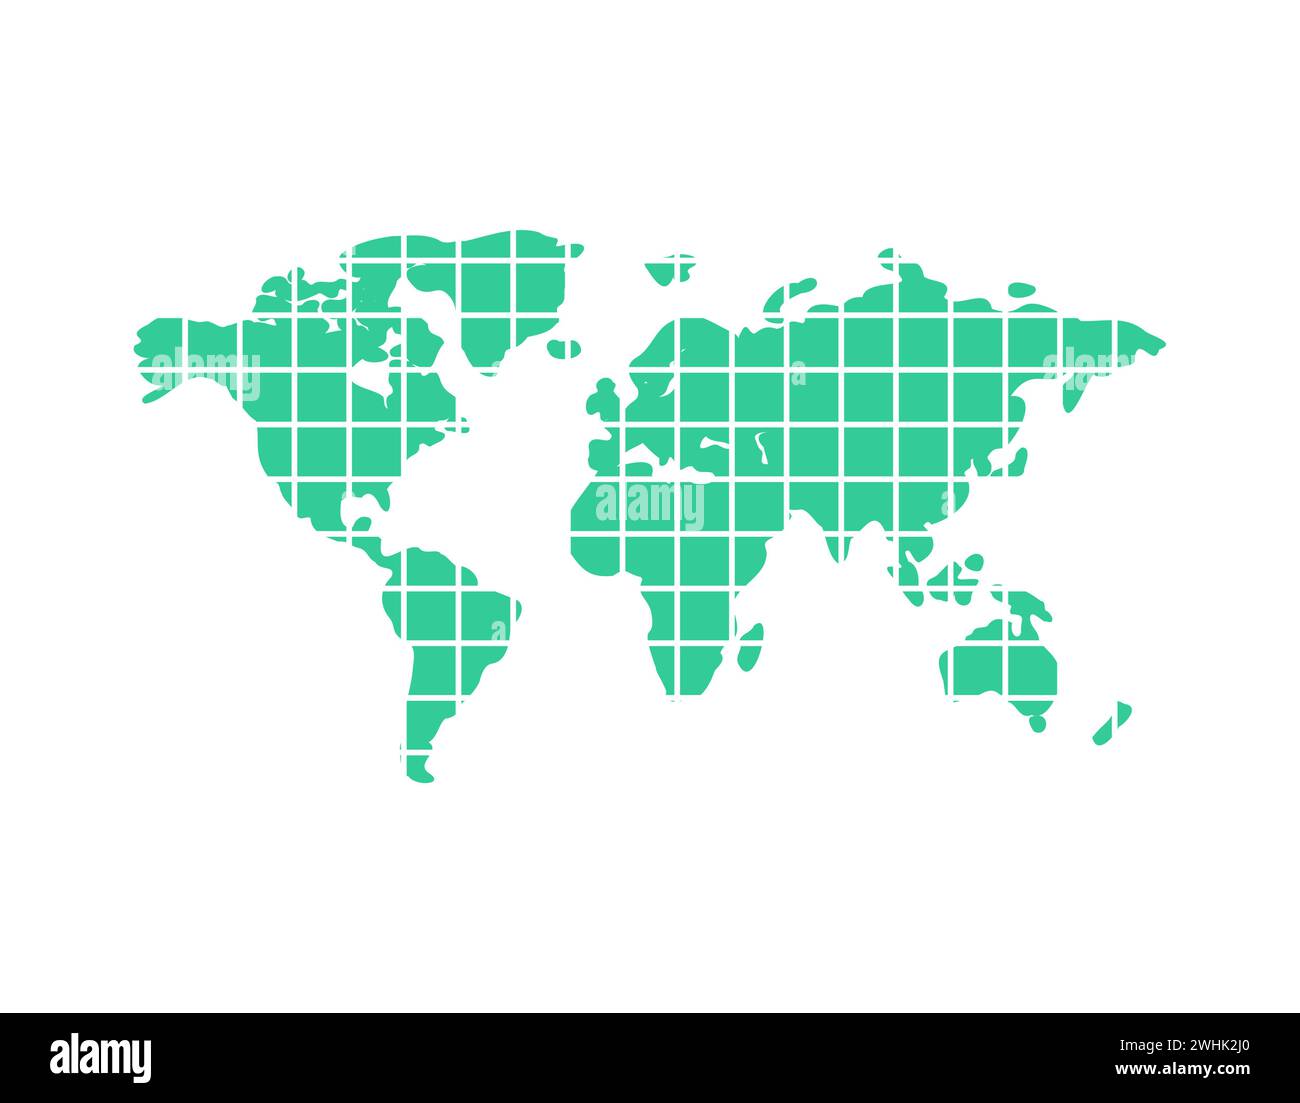 Segmentierte Weltkarte. Teile щт Planet Erde. Das Konzept der Weltkommunikation und der Menschen, die auf verschiedenen Kontinenten leben. Stock Vektor